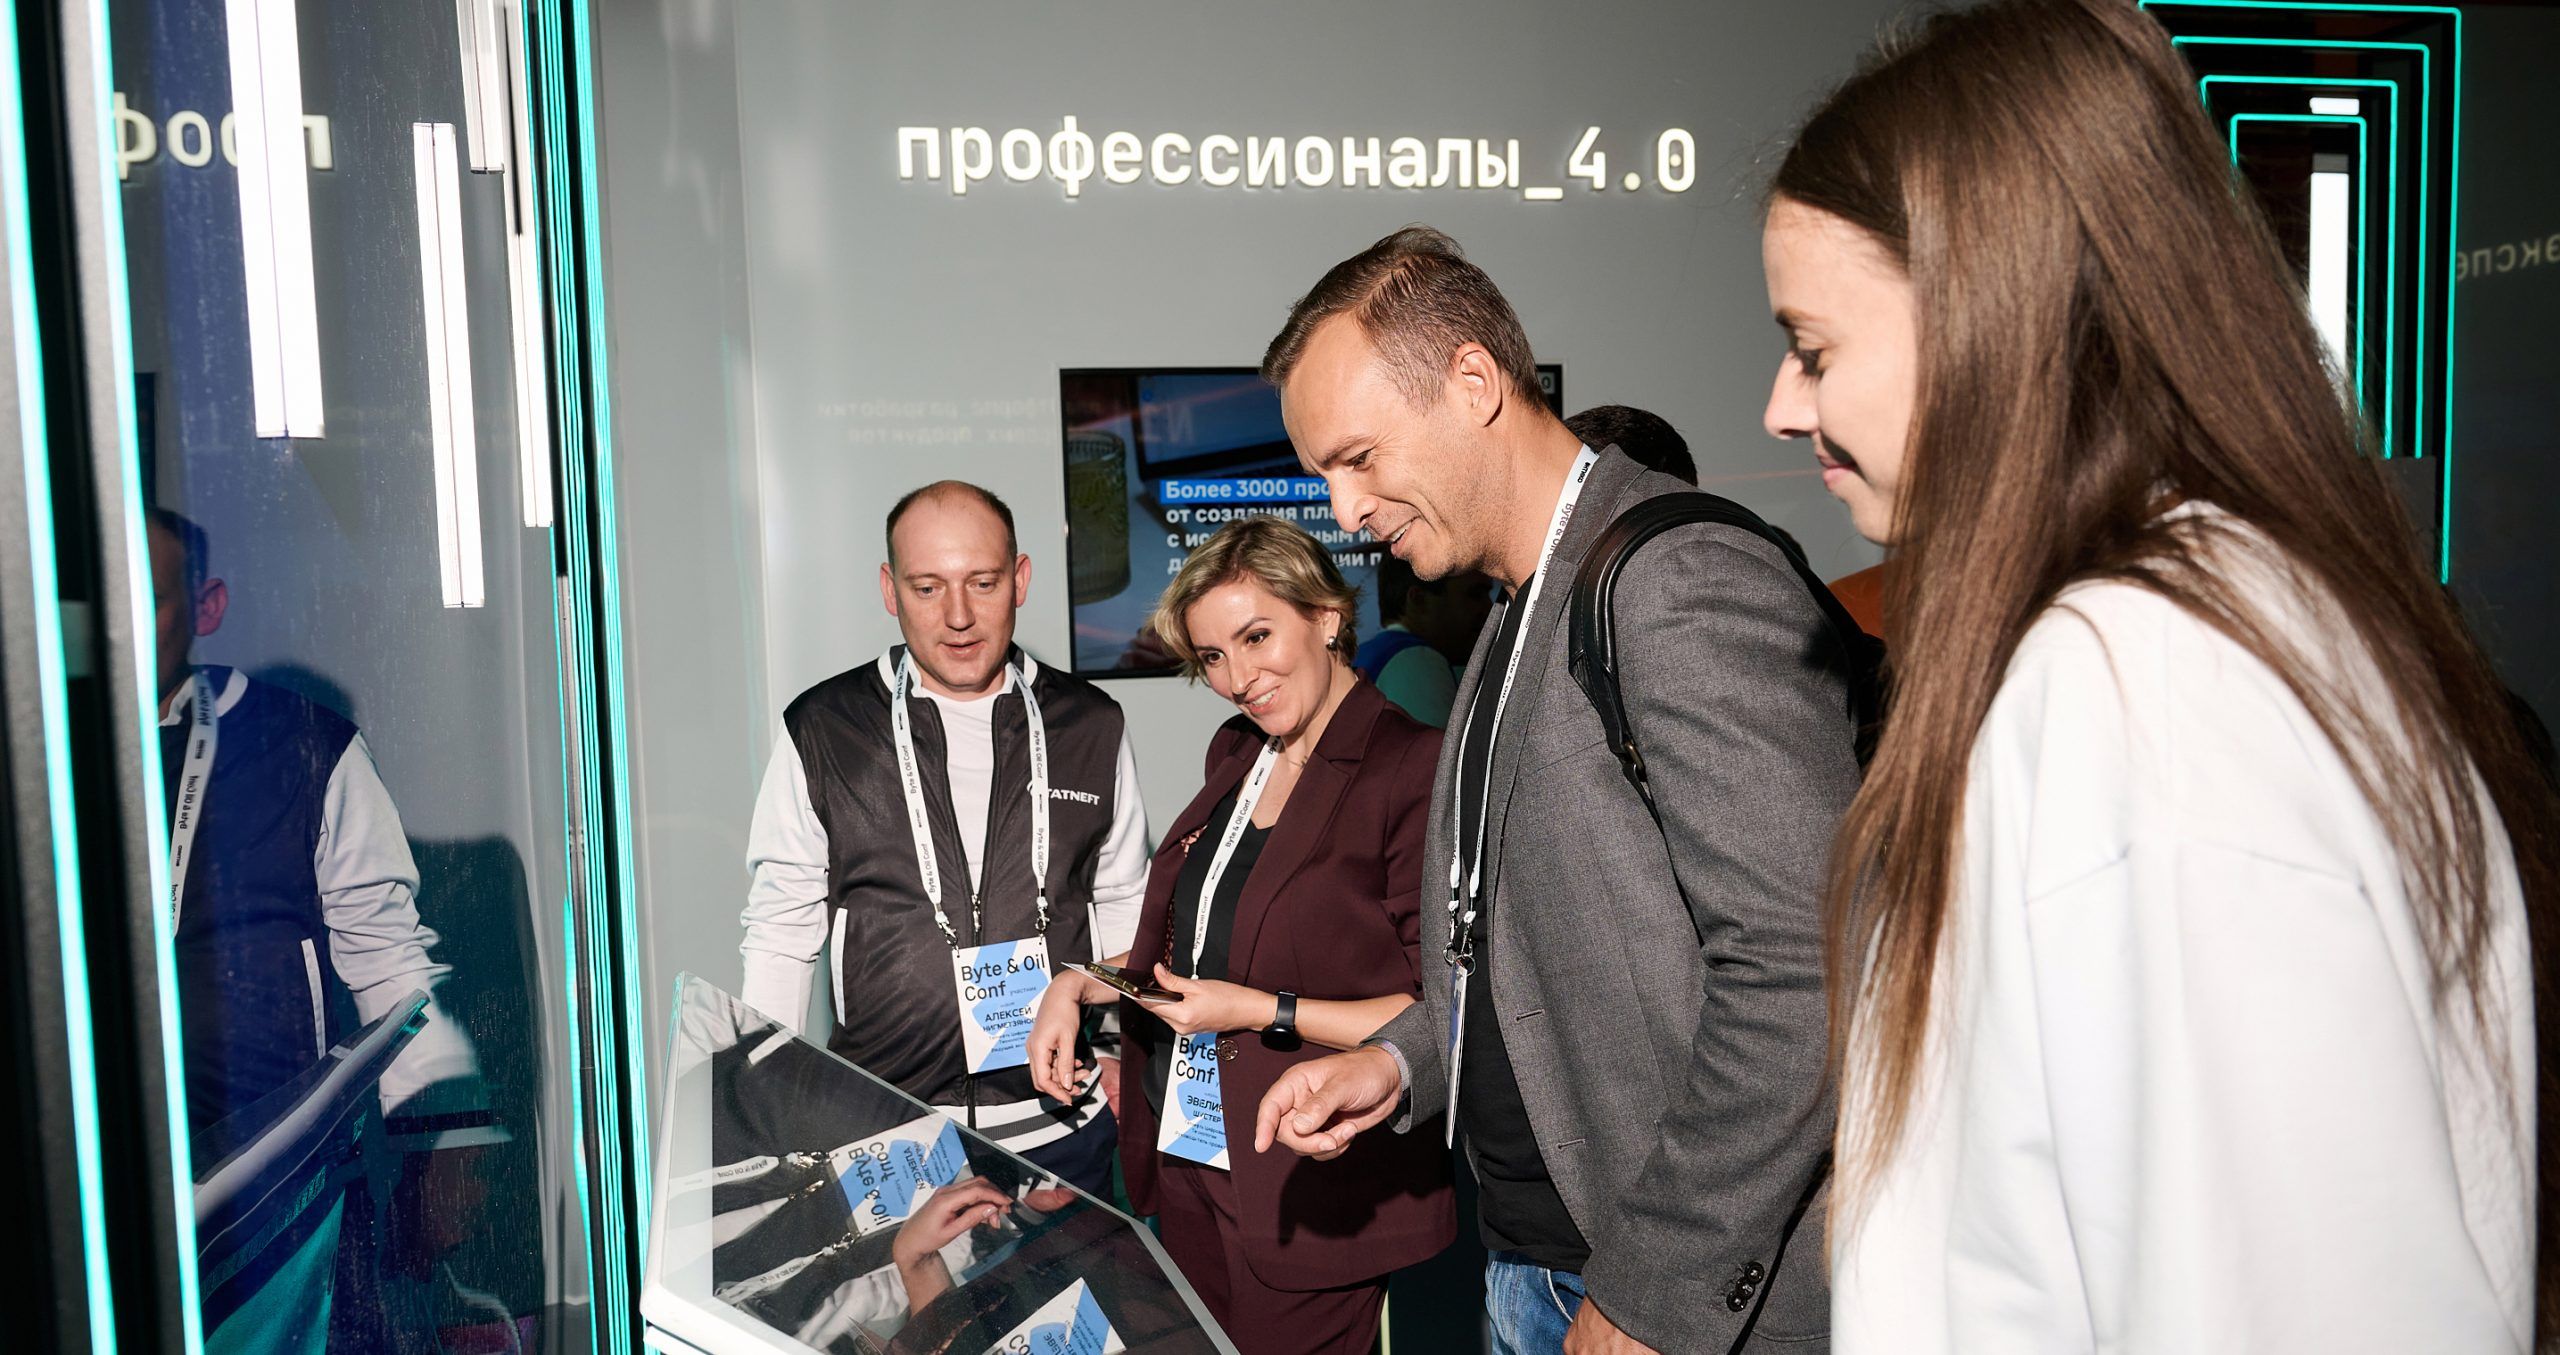 Стенд «Газпром нефти» для проведения квеста, основной для которого стала разработанная компанией цифровая платформа «Профессионалы 4.0»